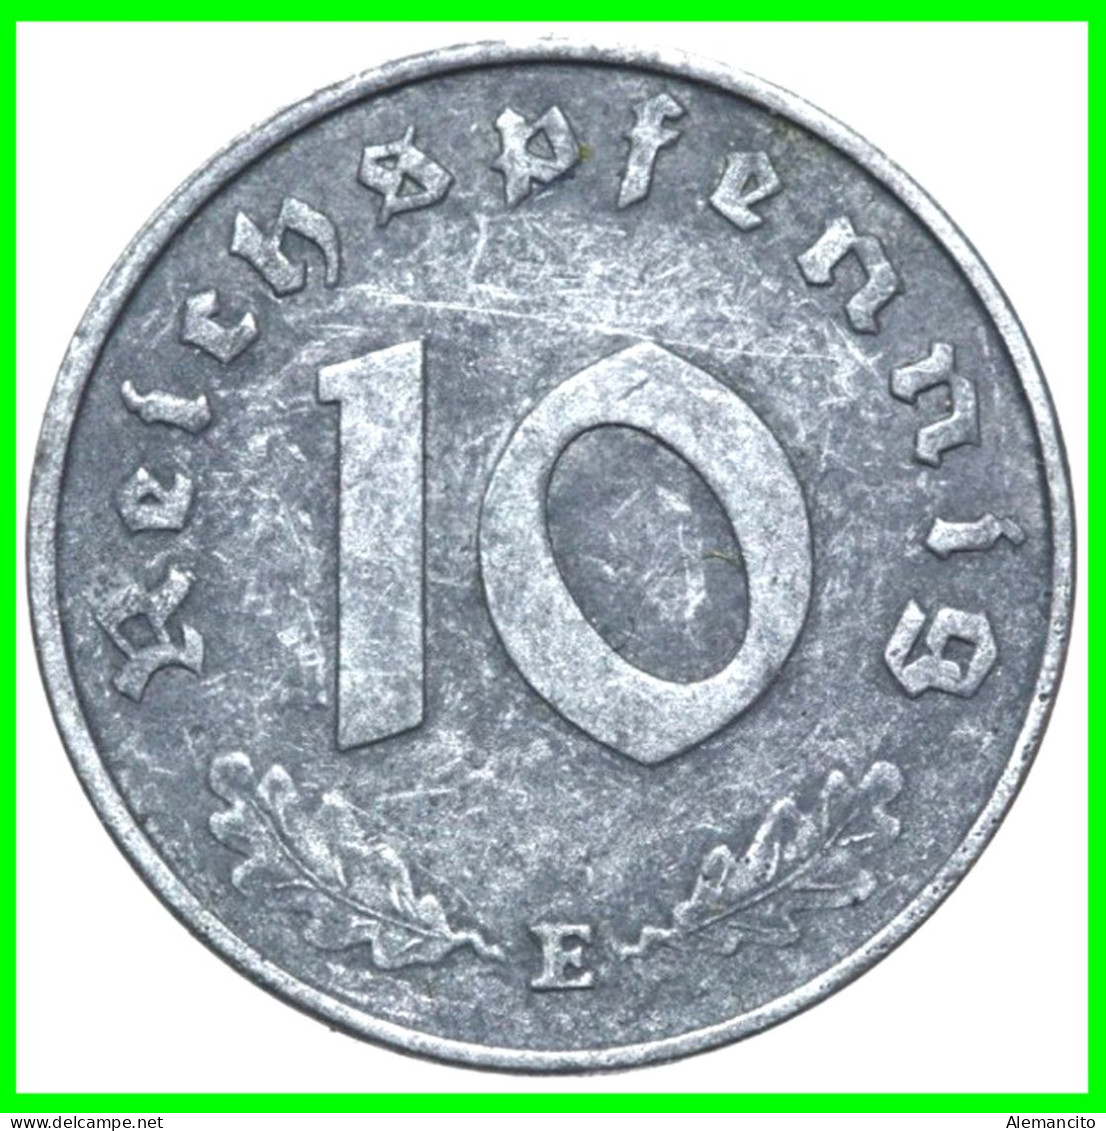 ALEMANIA - GERMANY SERIE DE 6 MONEDAS DE 10 REICHSPFNNIG TERCER REICHS ( AÑO 1944 CECAS - A - B -D - E - F - G ) - 10 Reichspfennig